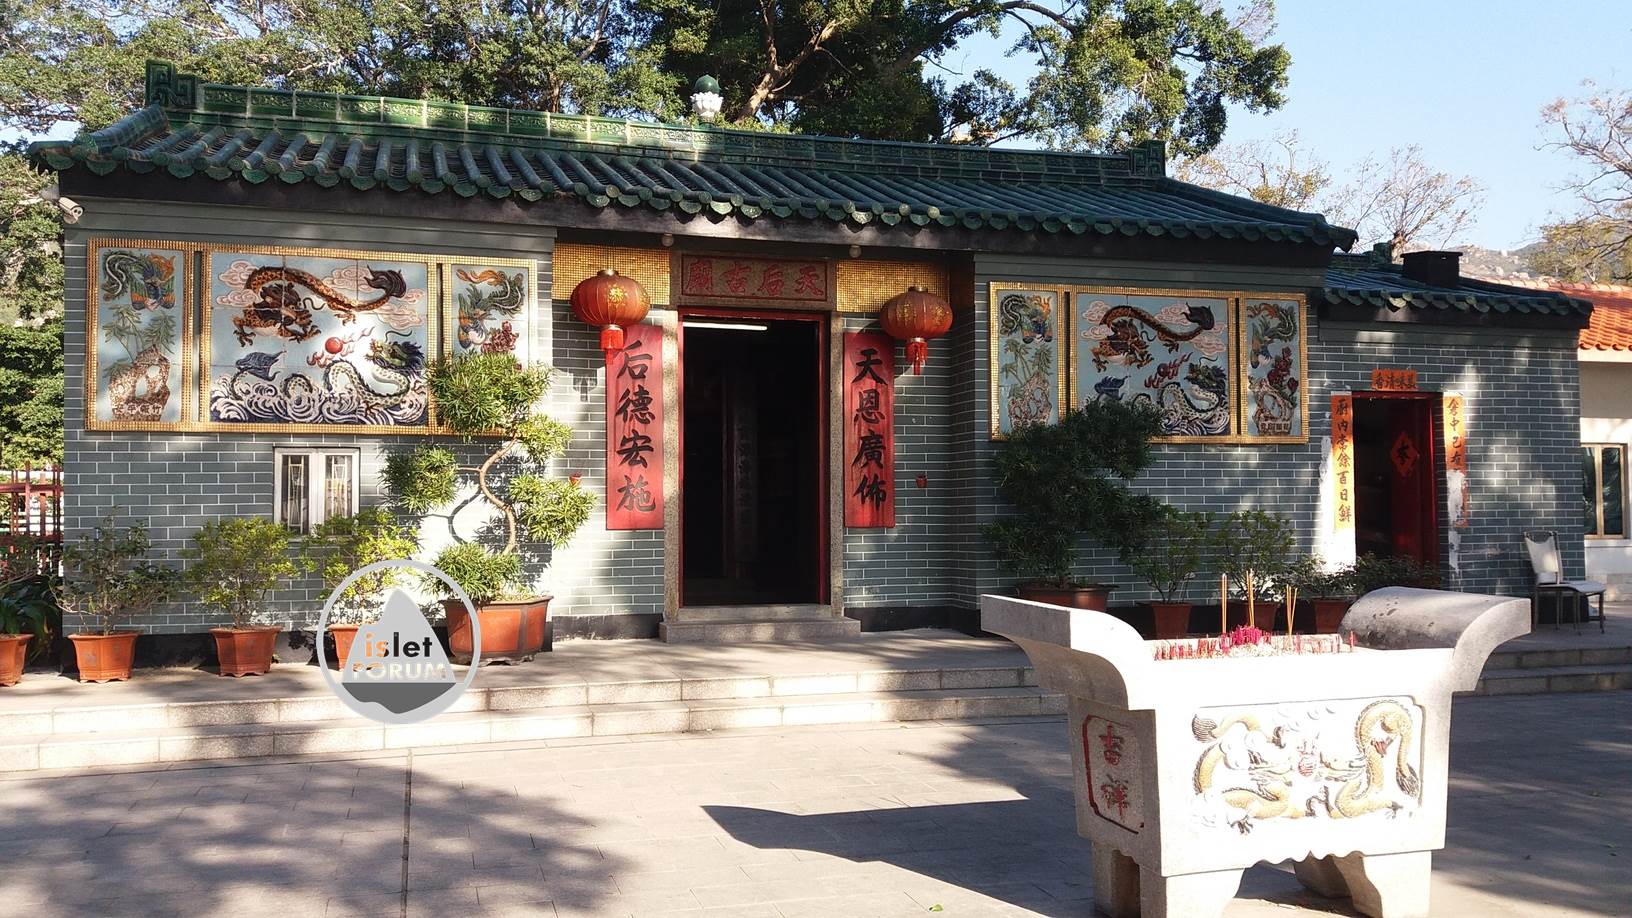 龍鼓灘天后廟lung kwu tan tin hau temple (22).jpg